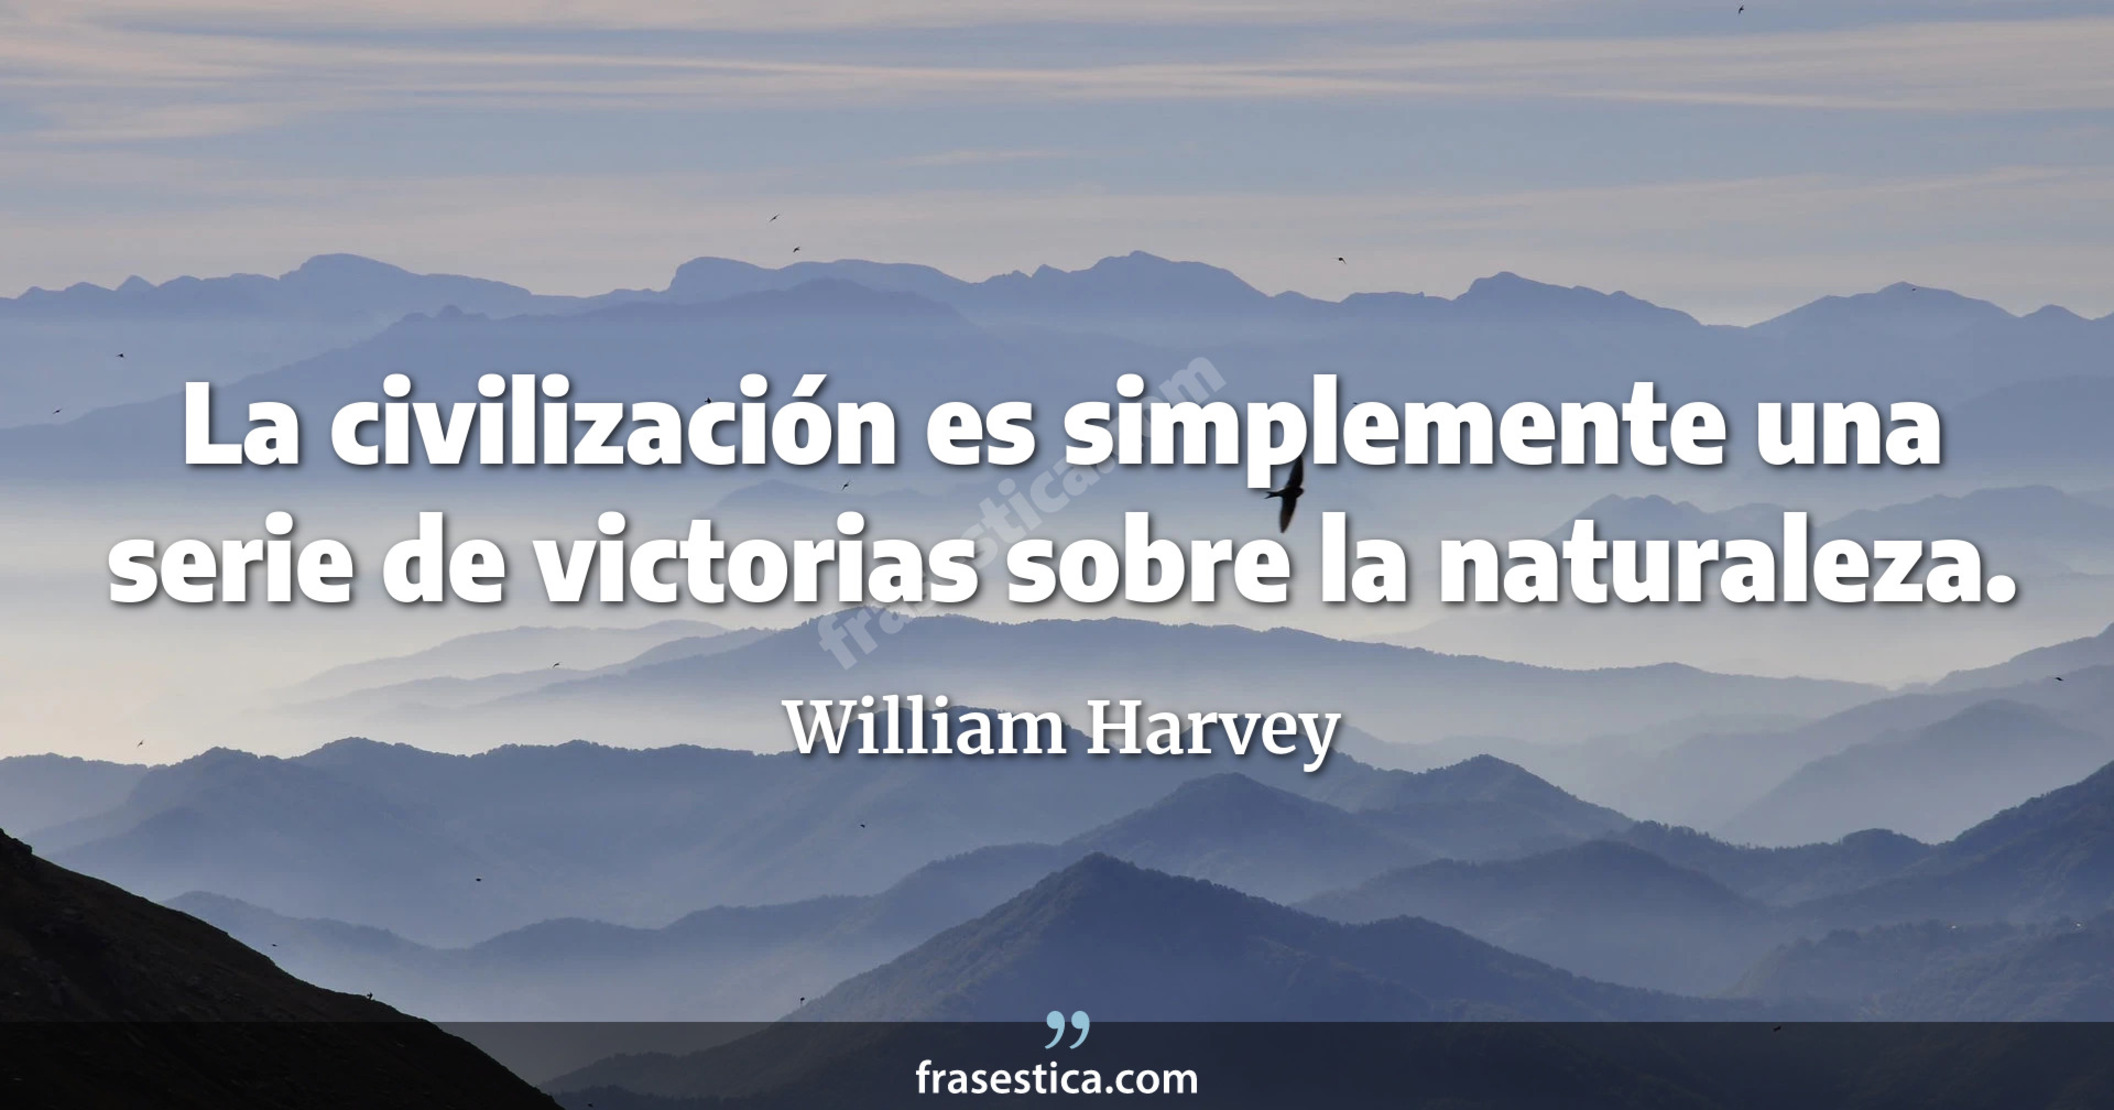 La civilización es simplemente una serie de victorias sobre la naturaleza. - William Harvey